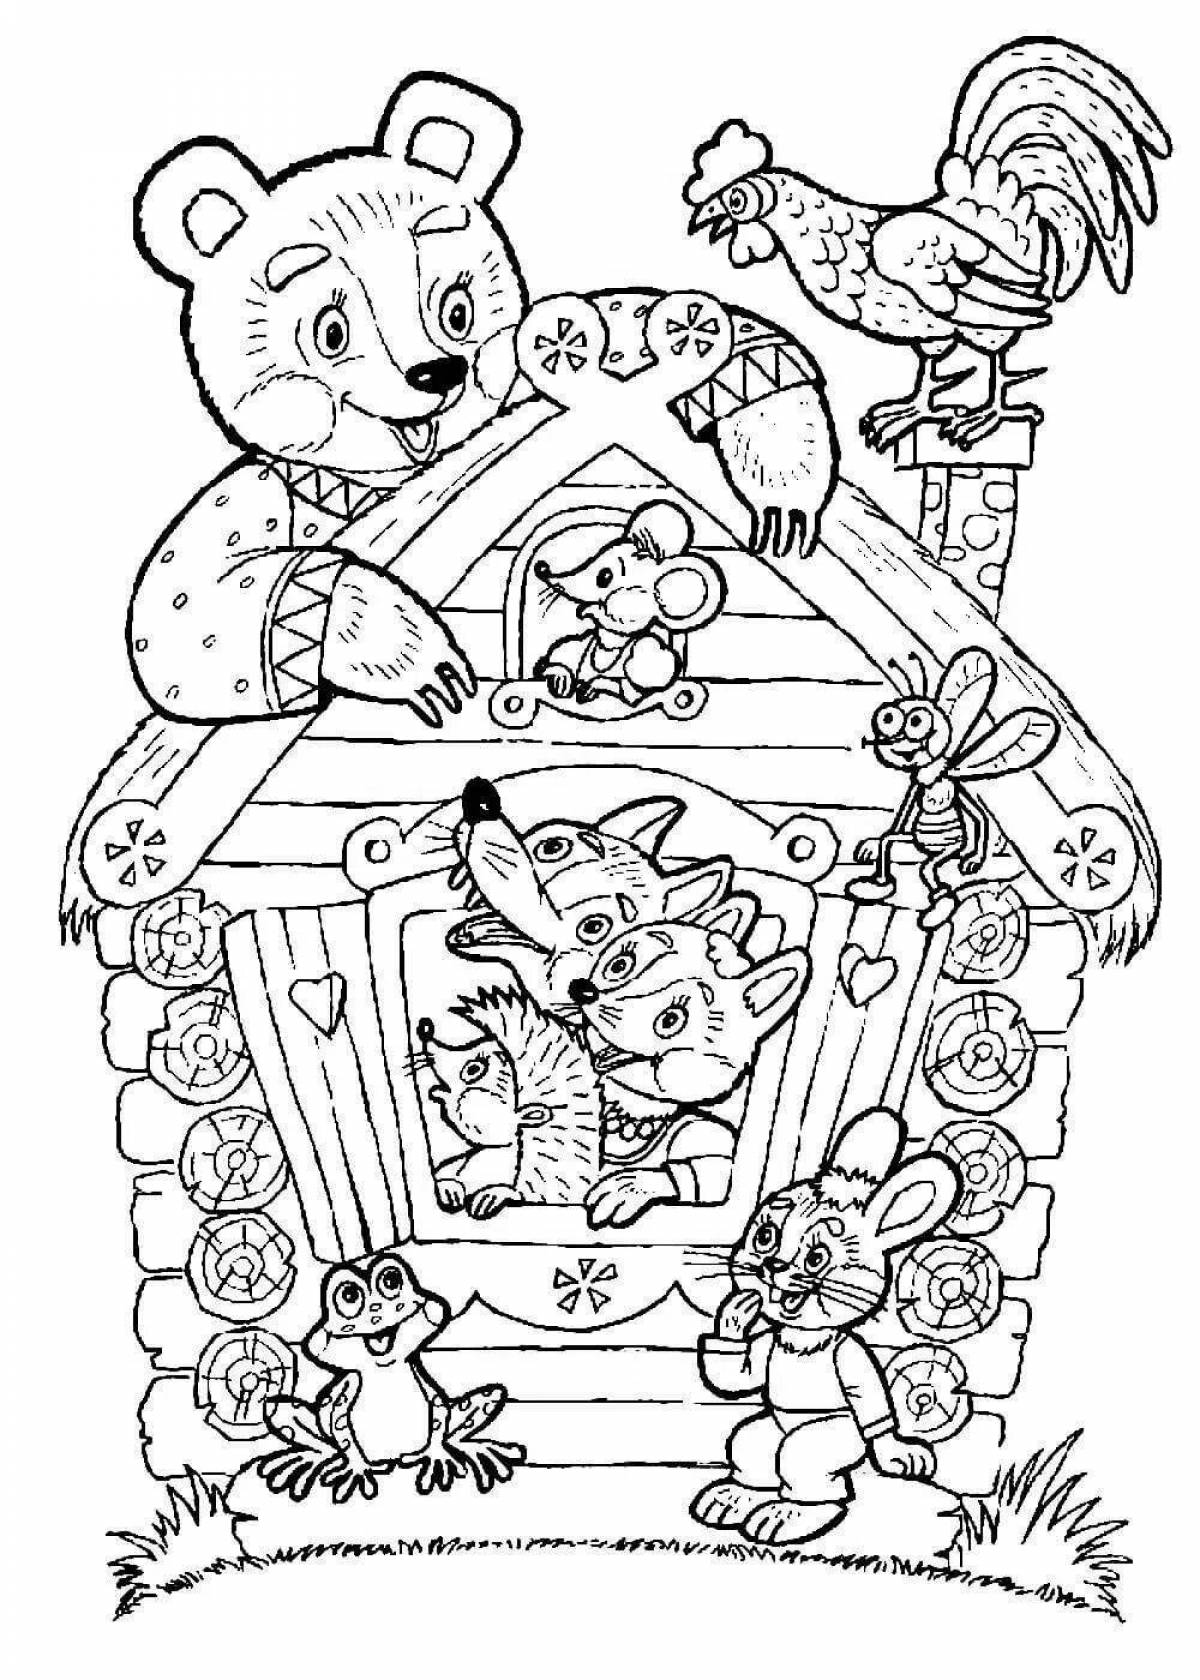 Раскраска с персонажами сказок Теремок для детей